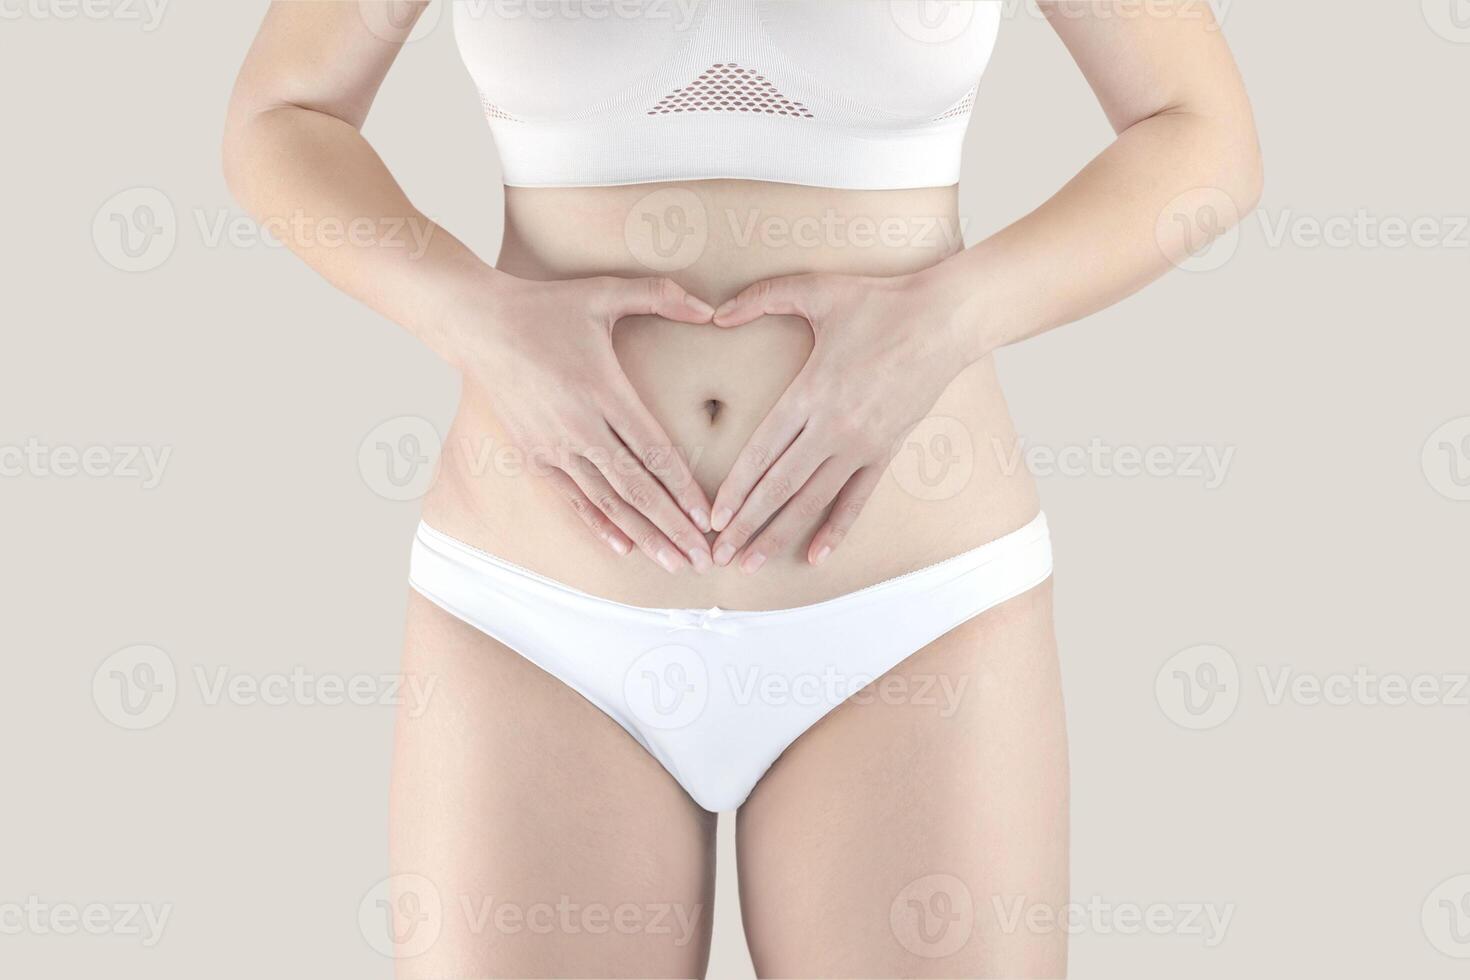 kvinna i underkläder innehav händer på henne mage framställning en hjärta symbol, kvinnors hälsa vård. begrepp av skönhet, kropp och hud vård, medicin eller graviditet foto